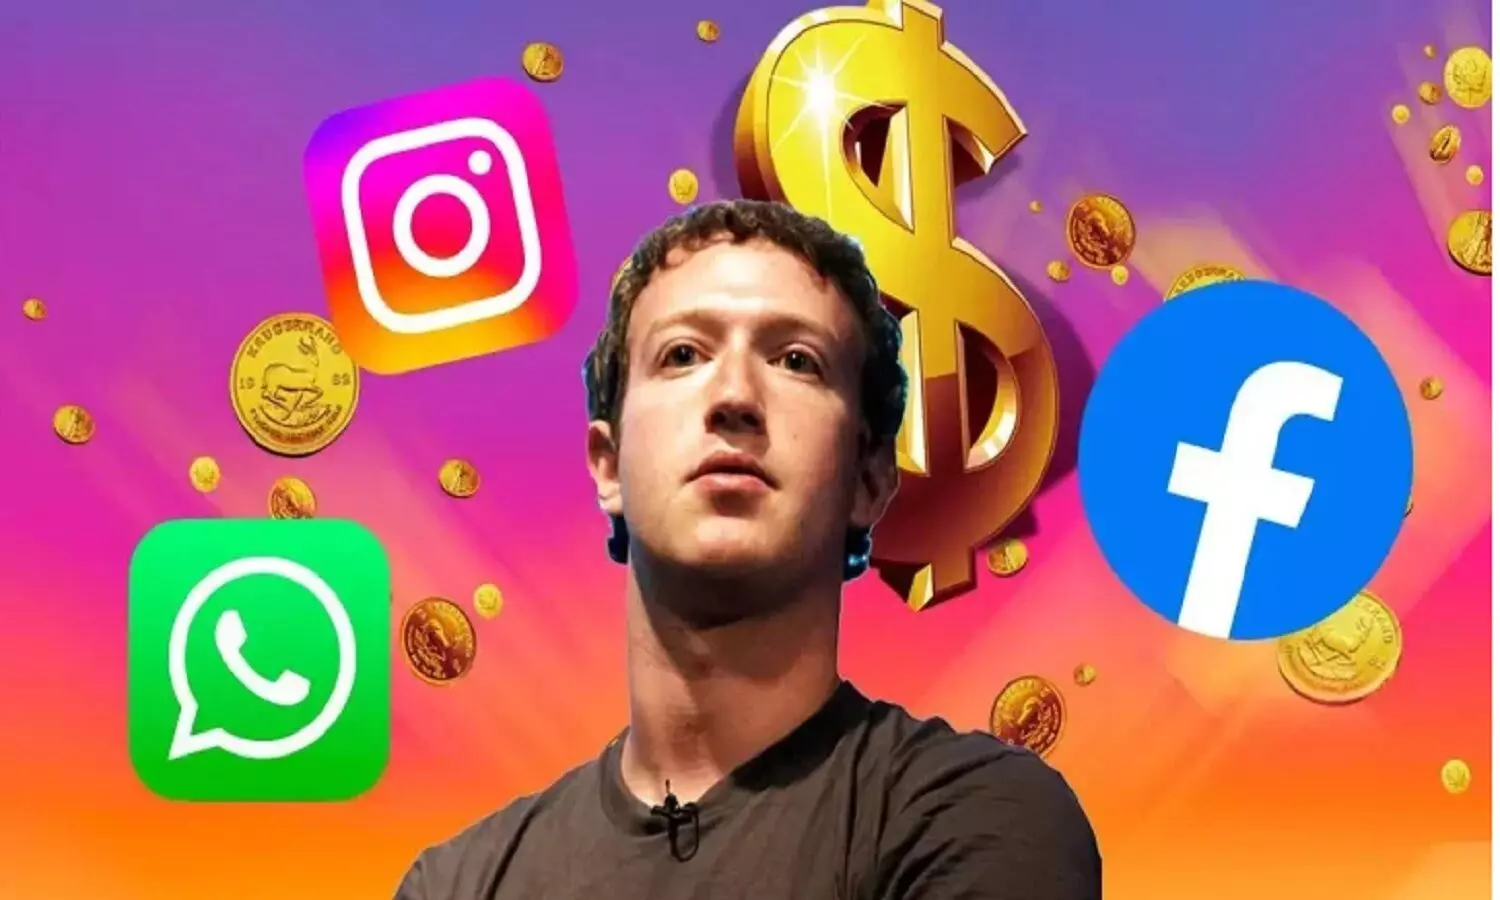 WhatsApp, Facebook और Instagram चलाने के लिए अब पैसे देने होंगे, जानें कितना चार्ज लगेगा